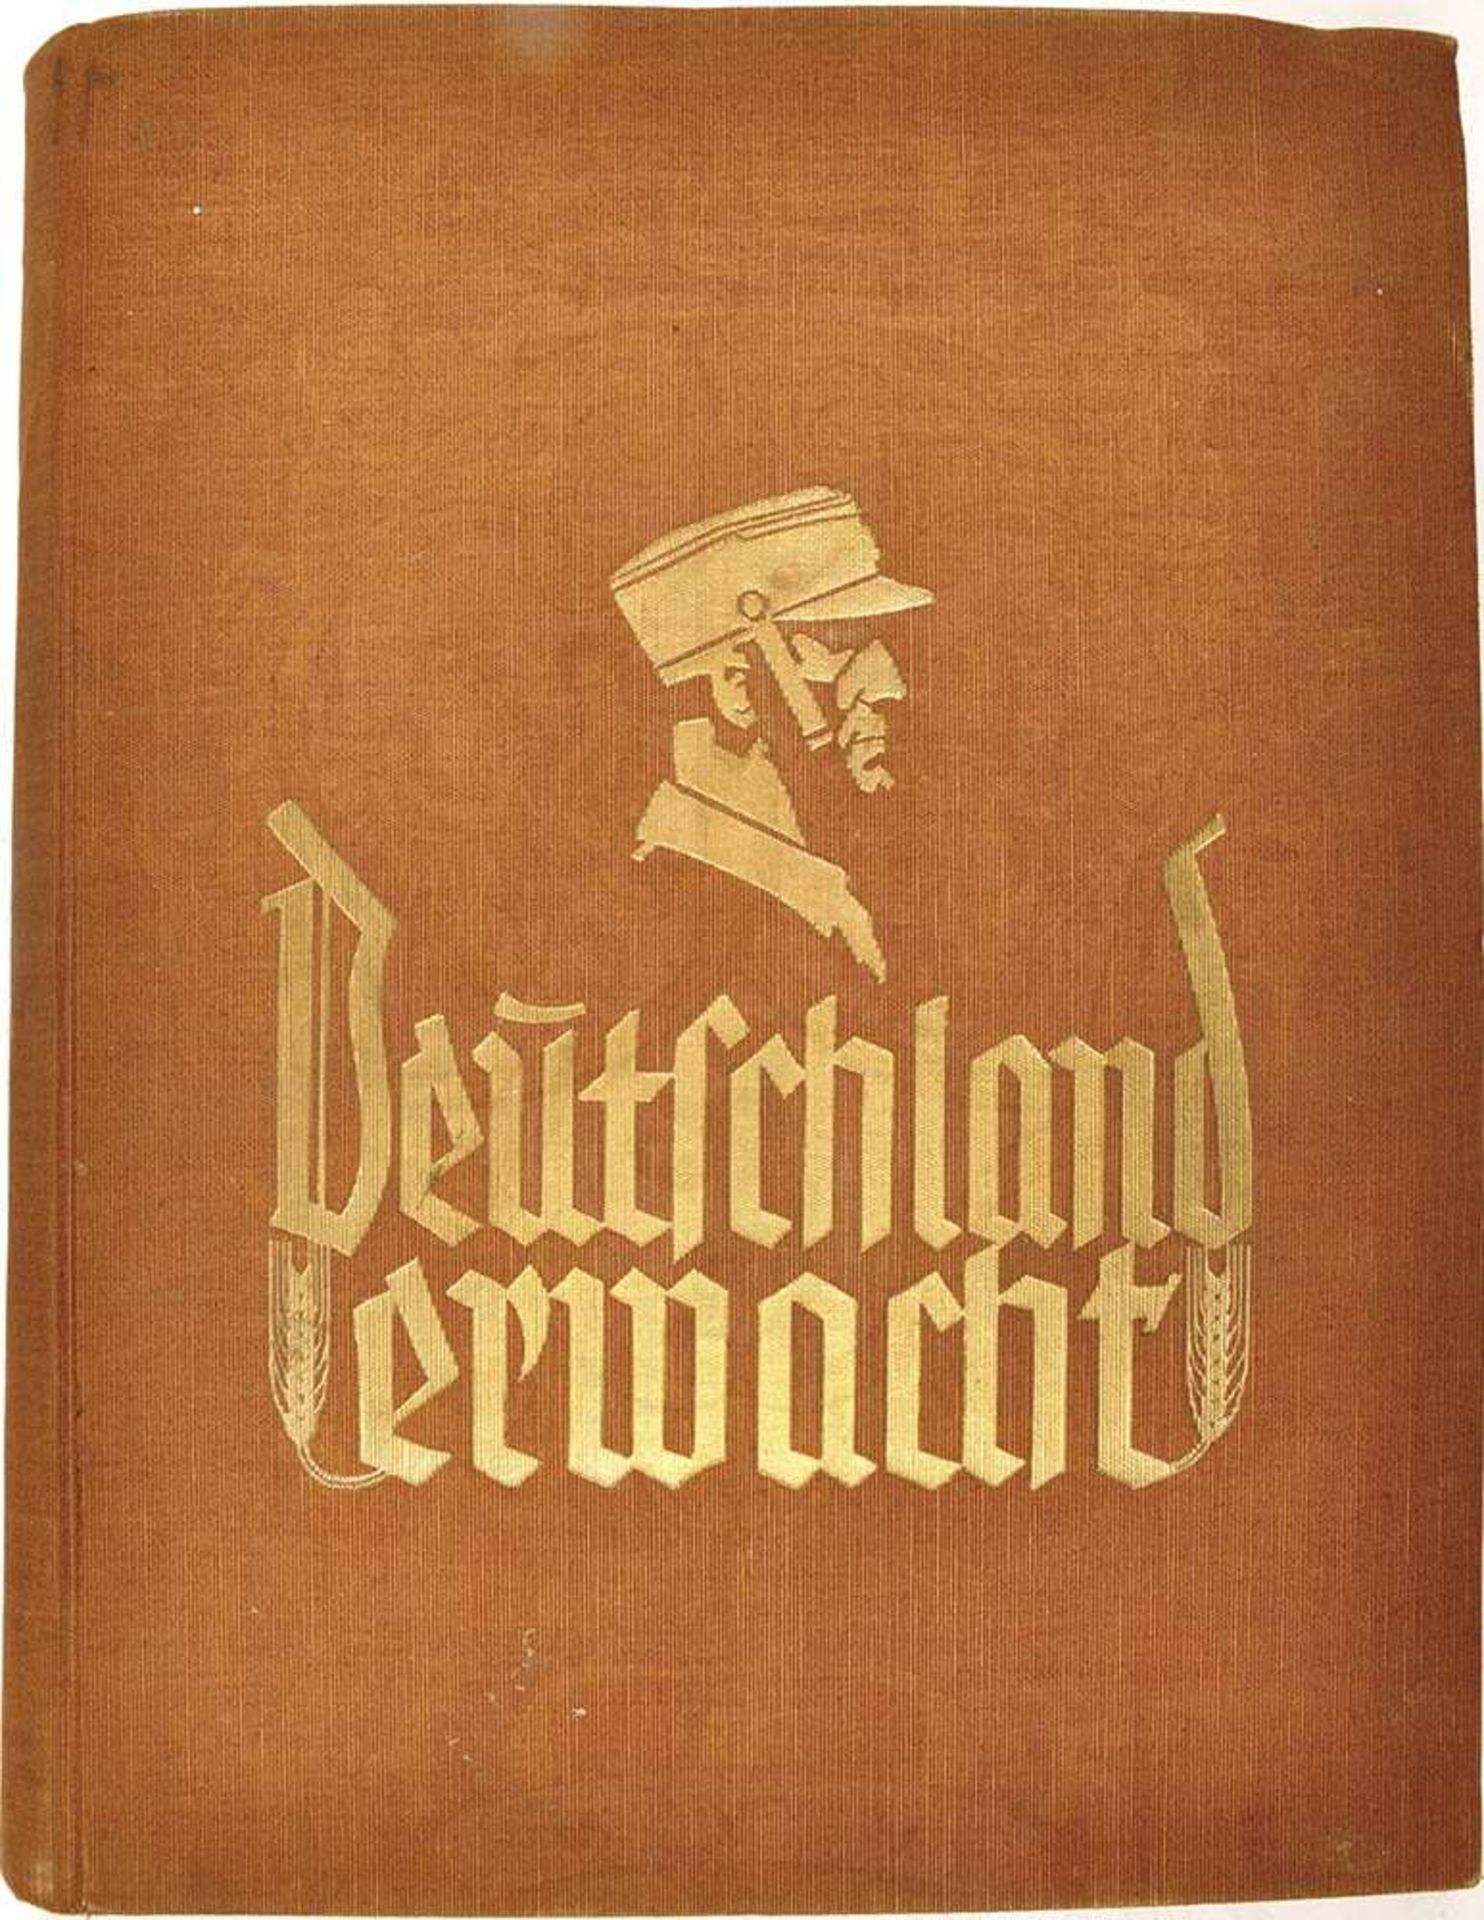 DEUTSCHLAND ERWACHT, "Werden Kampf und Sieg der NSDAP", Cig.-Bilderdienst Altona-Bahrenfeld 1933,